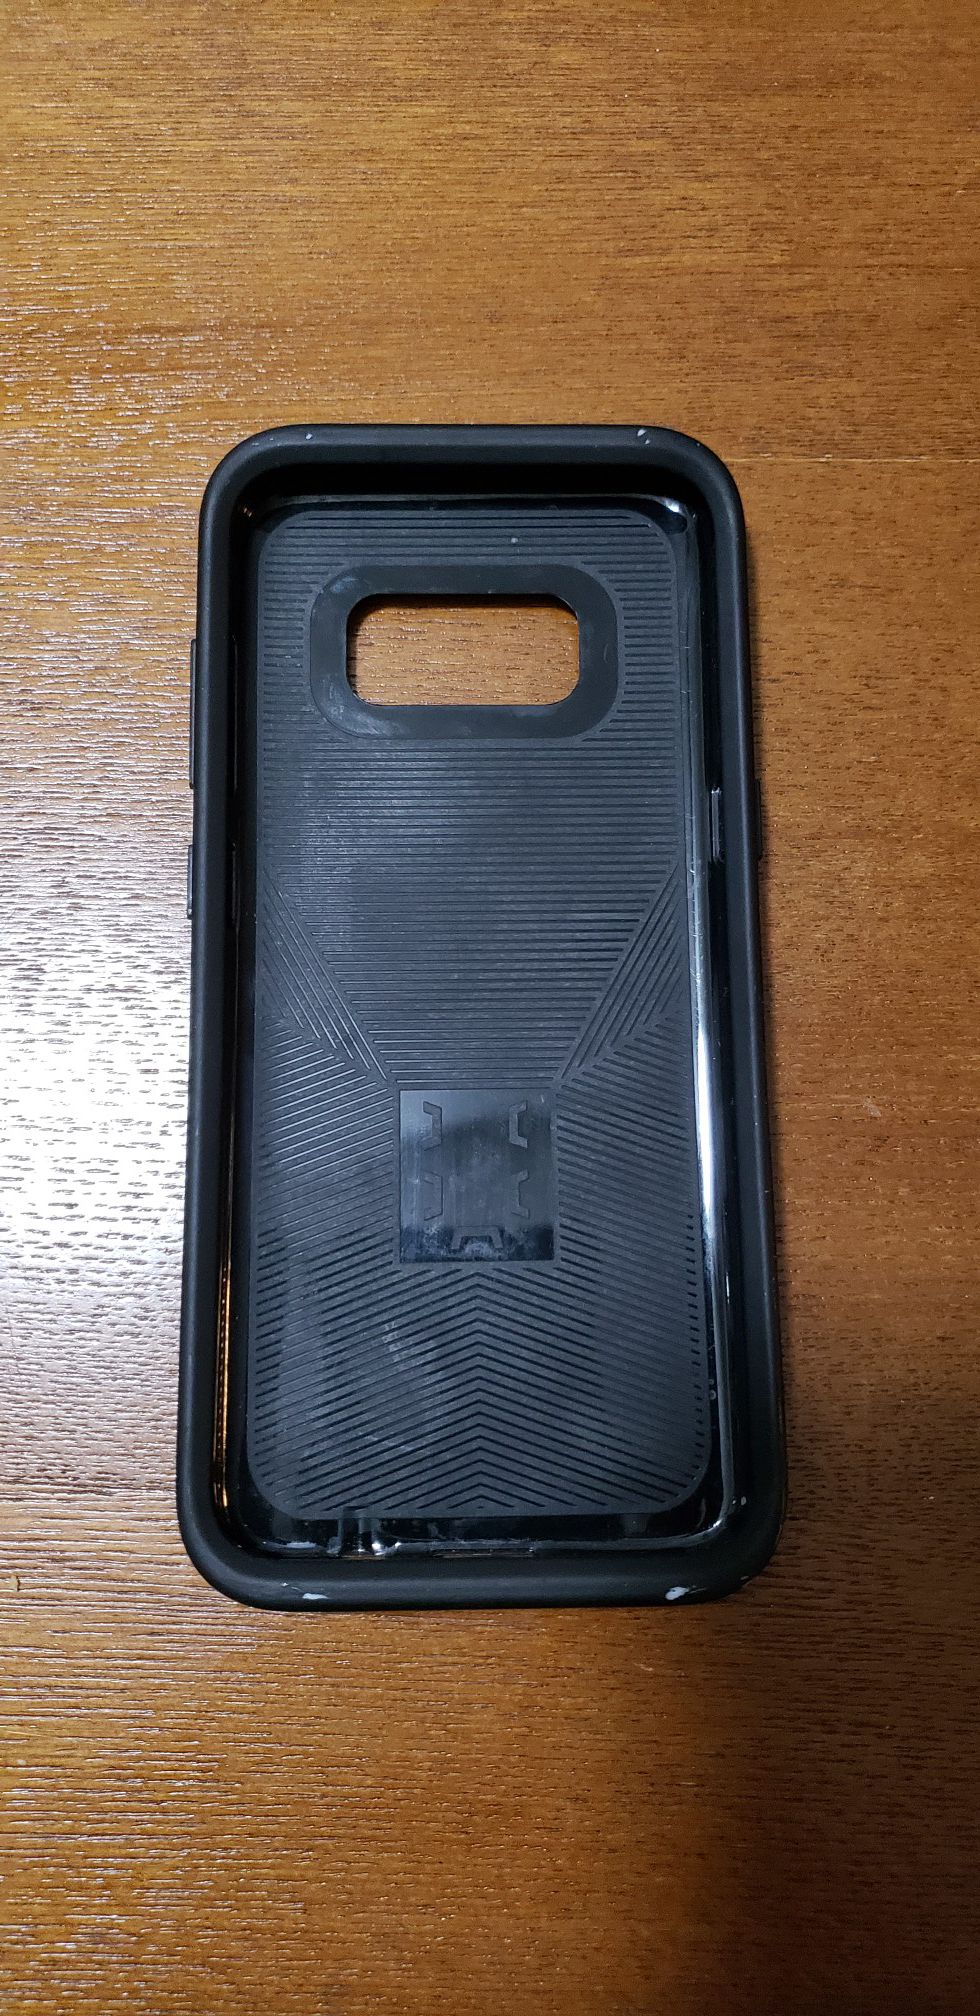 Samsung galaxy s8 case